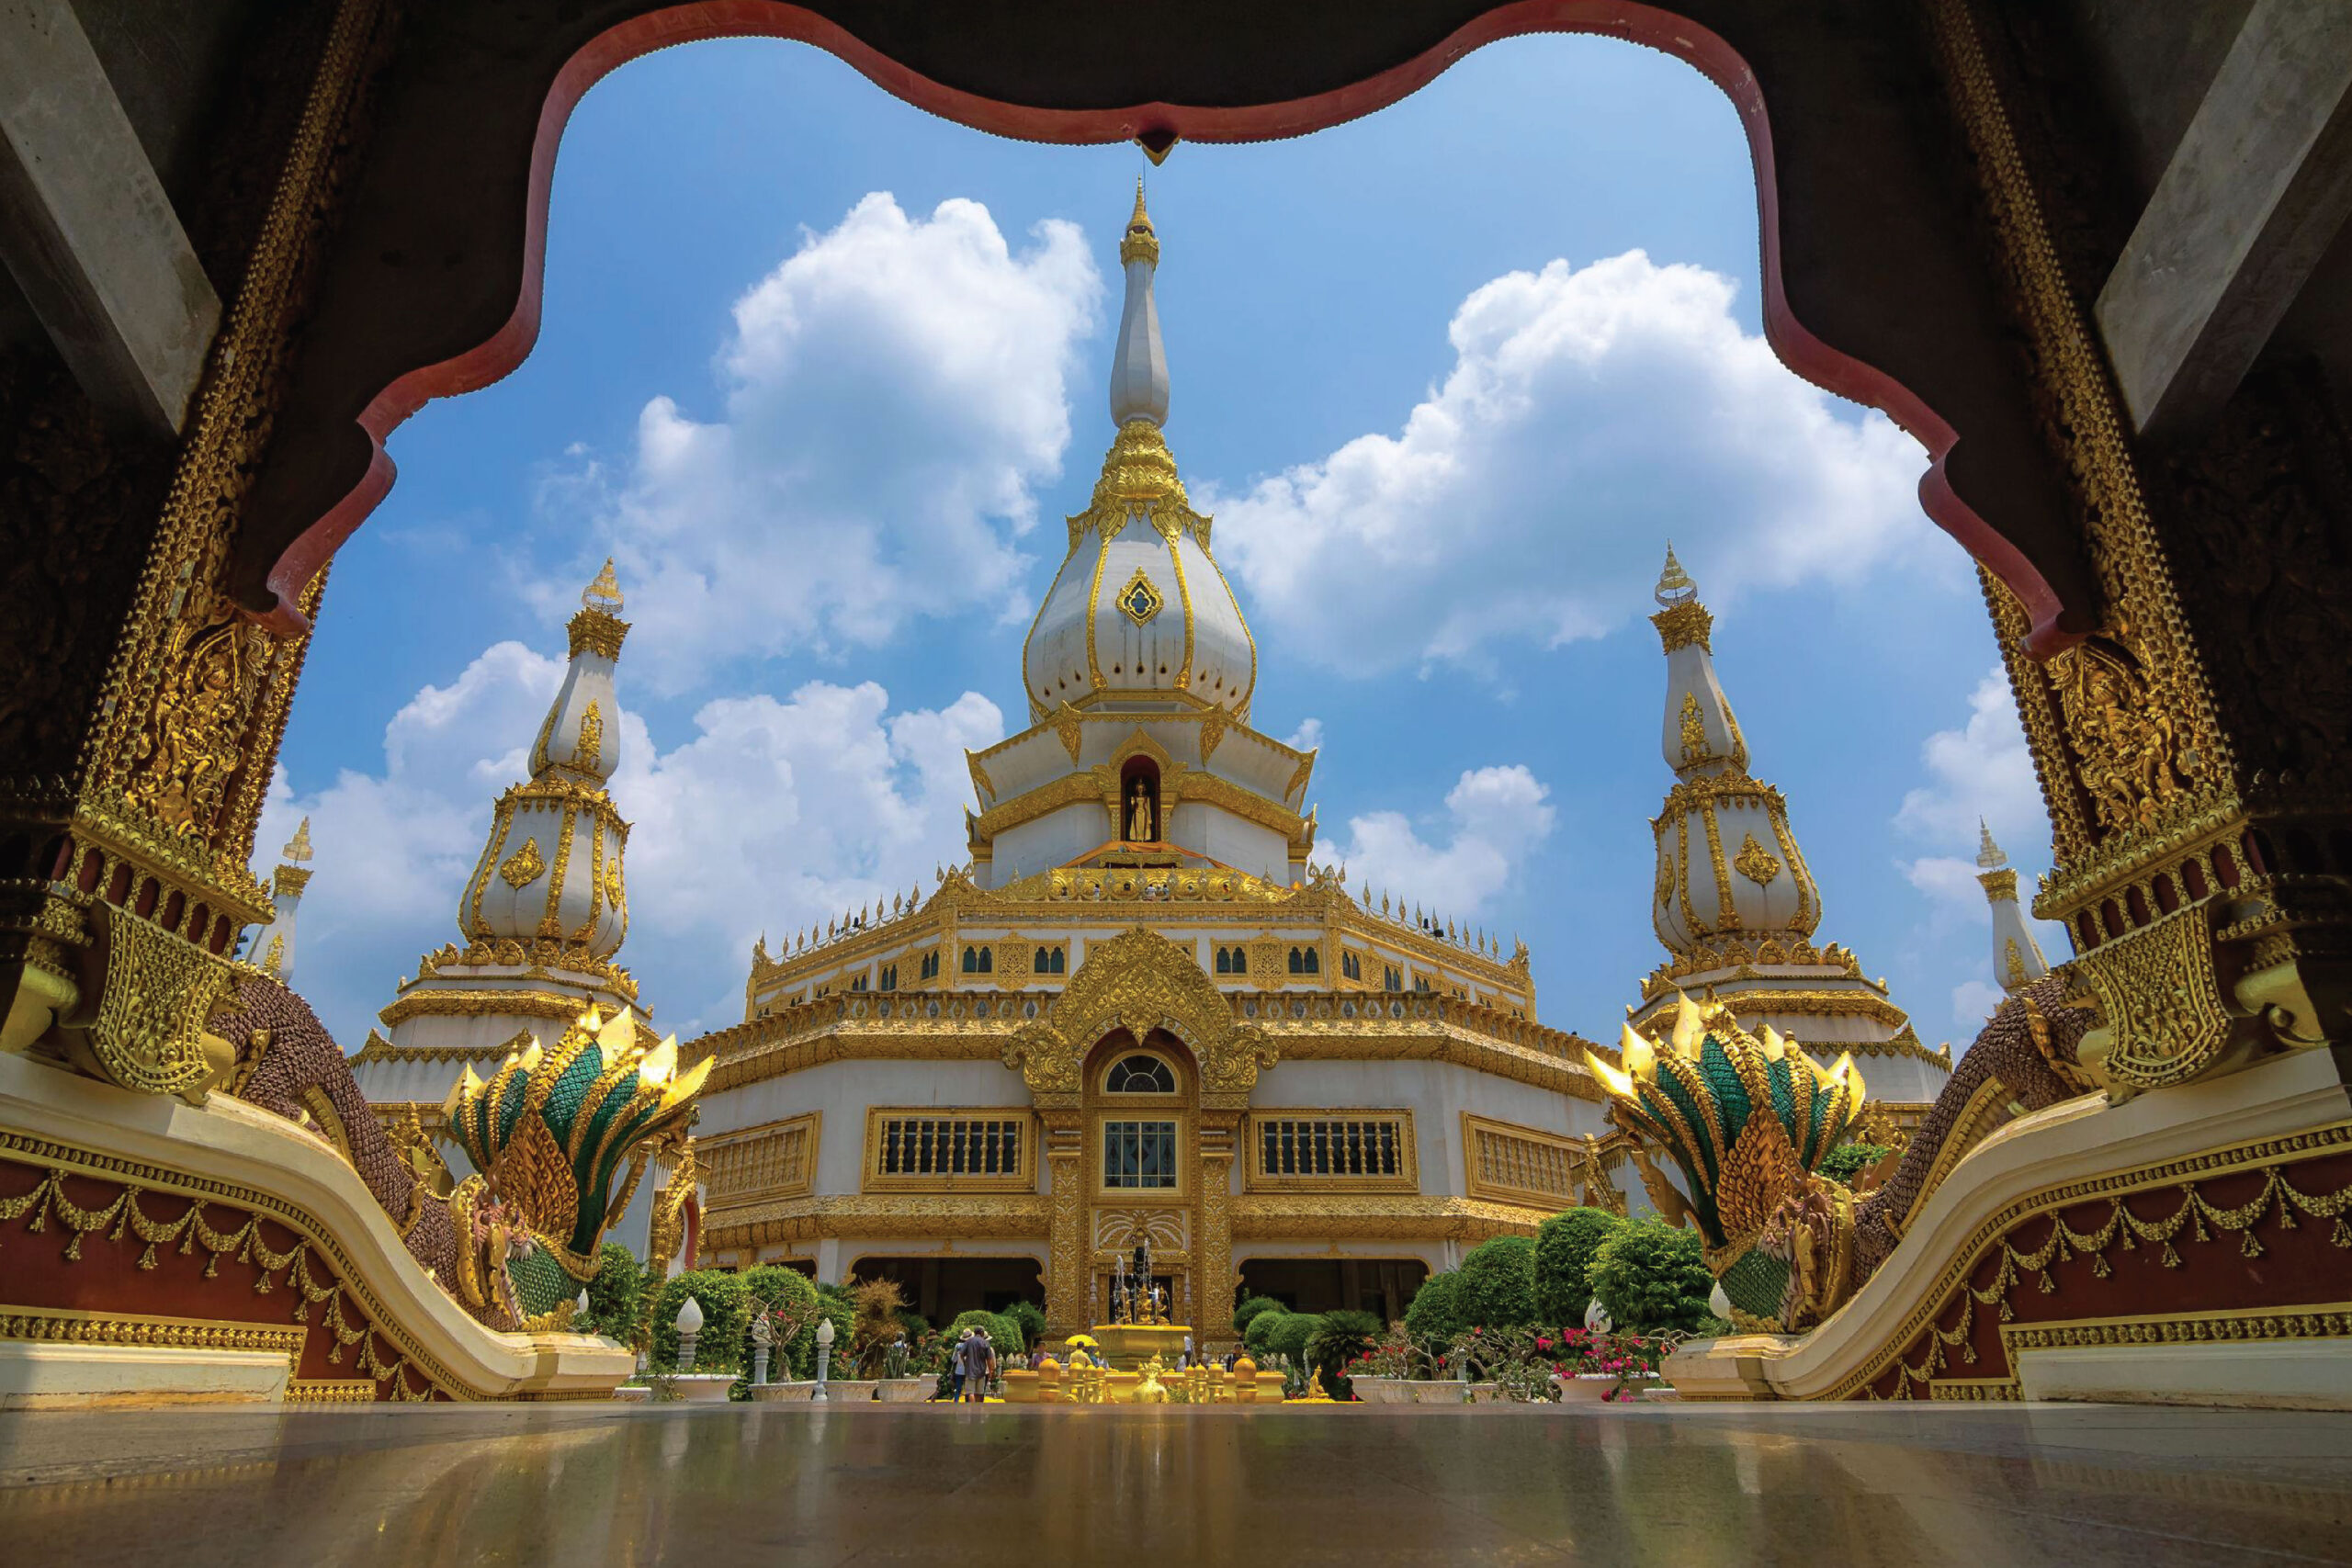 Wat Pha Nam Thip Thep Prasit Wanaram